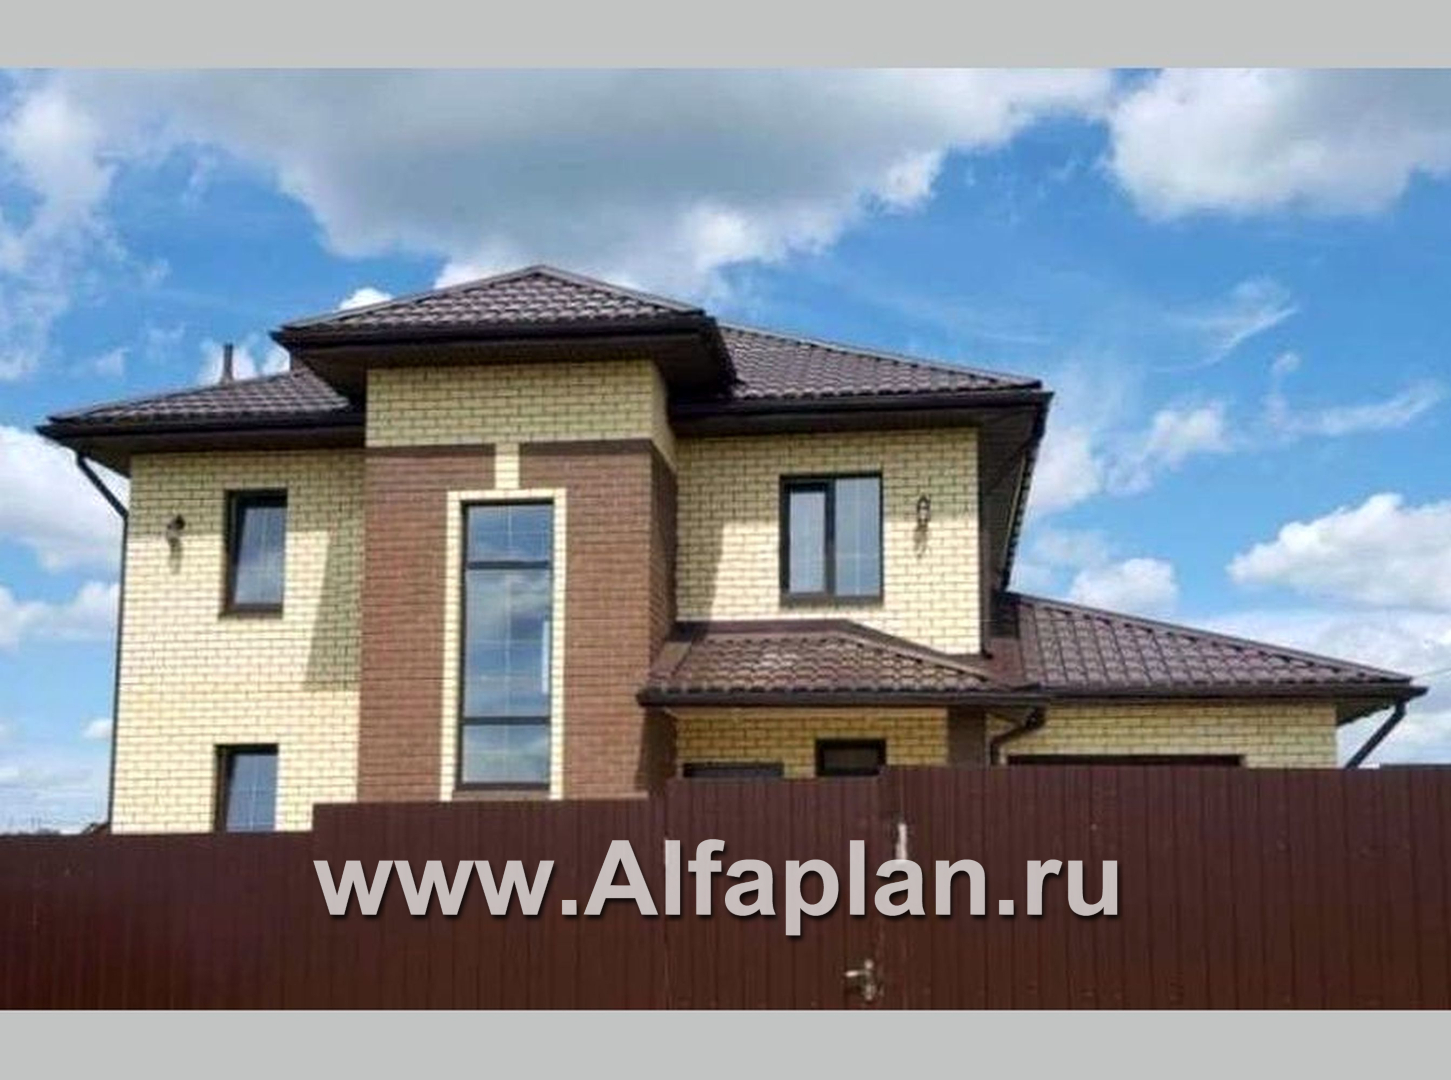 Проекты домов Альфаплан - «Виконт»- двухэтажный дом - и отличной планировкой - дополнительное изображение №6